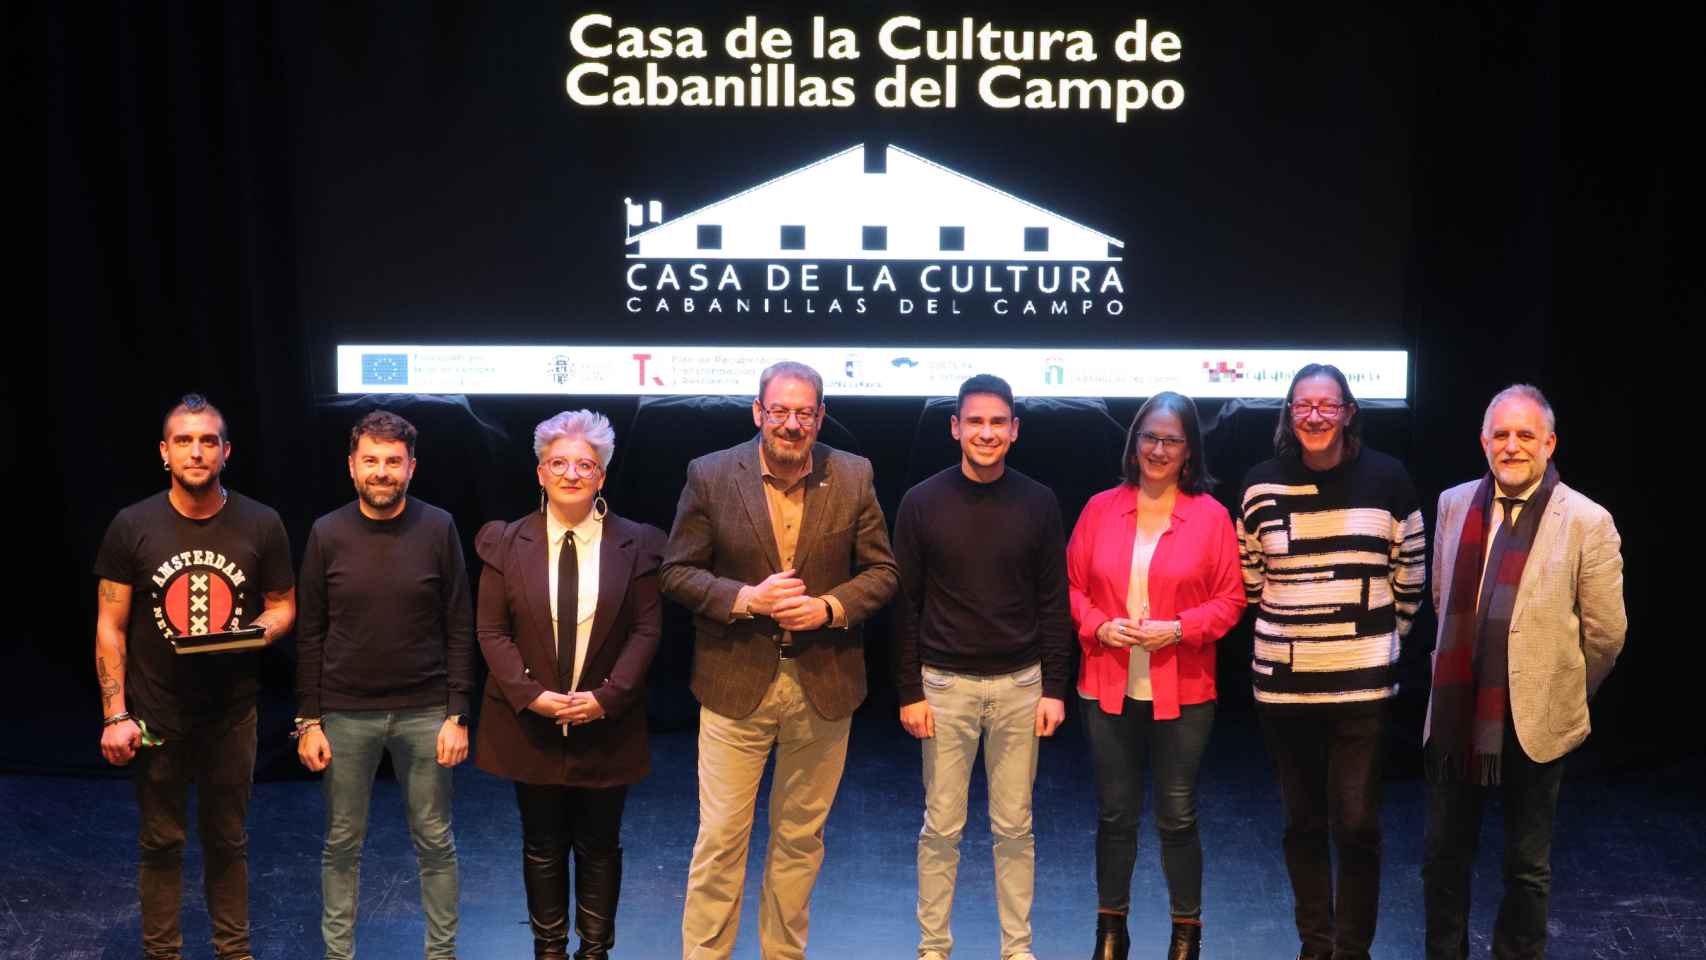 Acto de presentación para remodelar la Casa de Cultura de Cabanillas del Campo (Guadalajara).